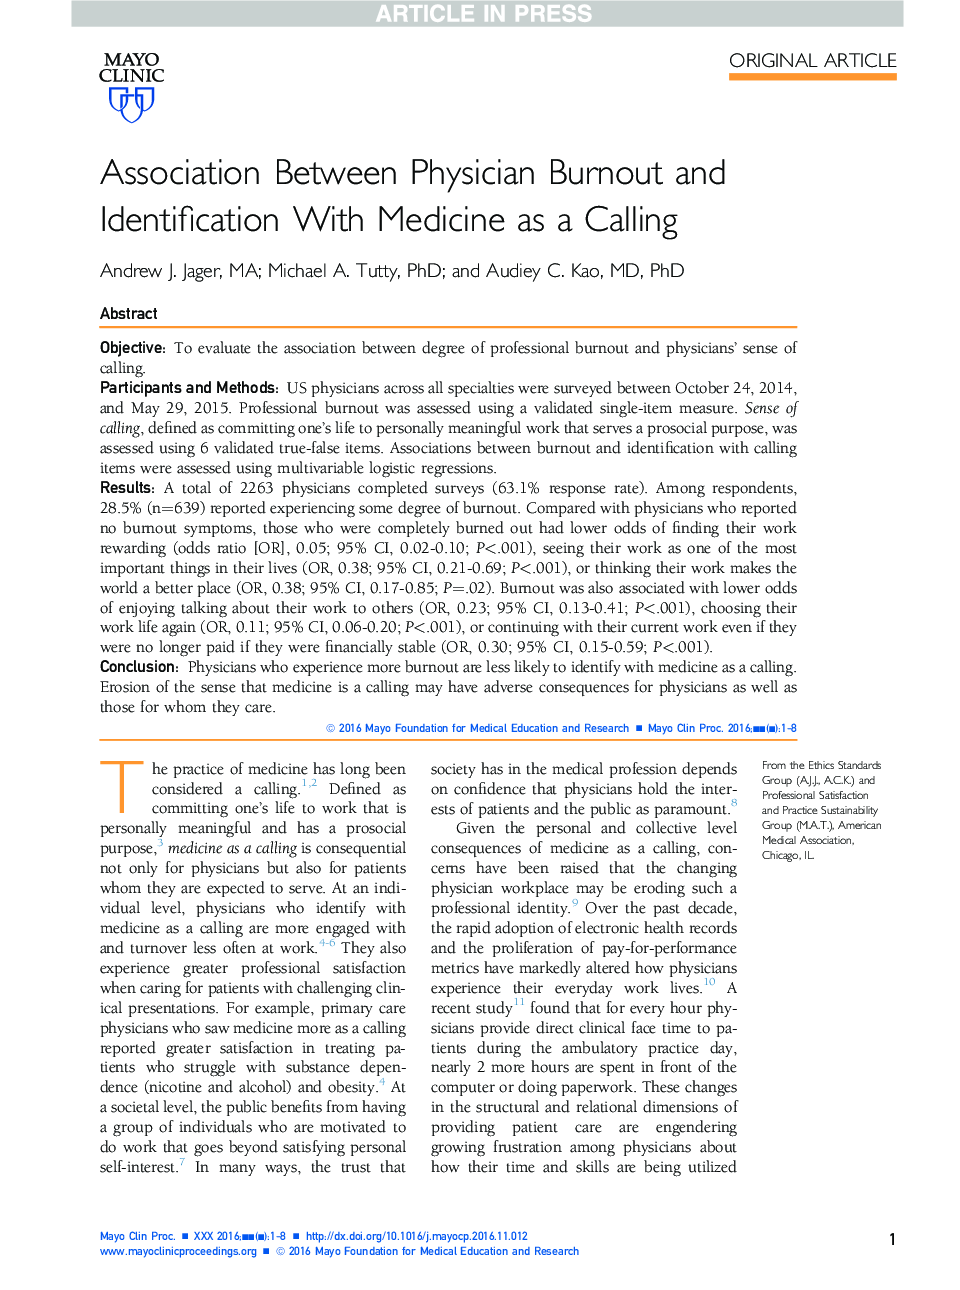 ارتباط بین فرسودگی پزشکان و شناسایی با پزشکی به عنوان یک تماس 